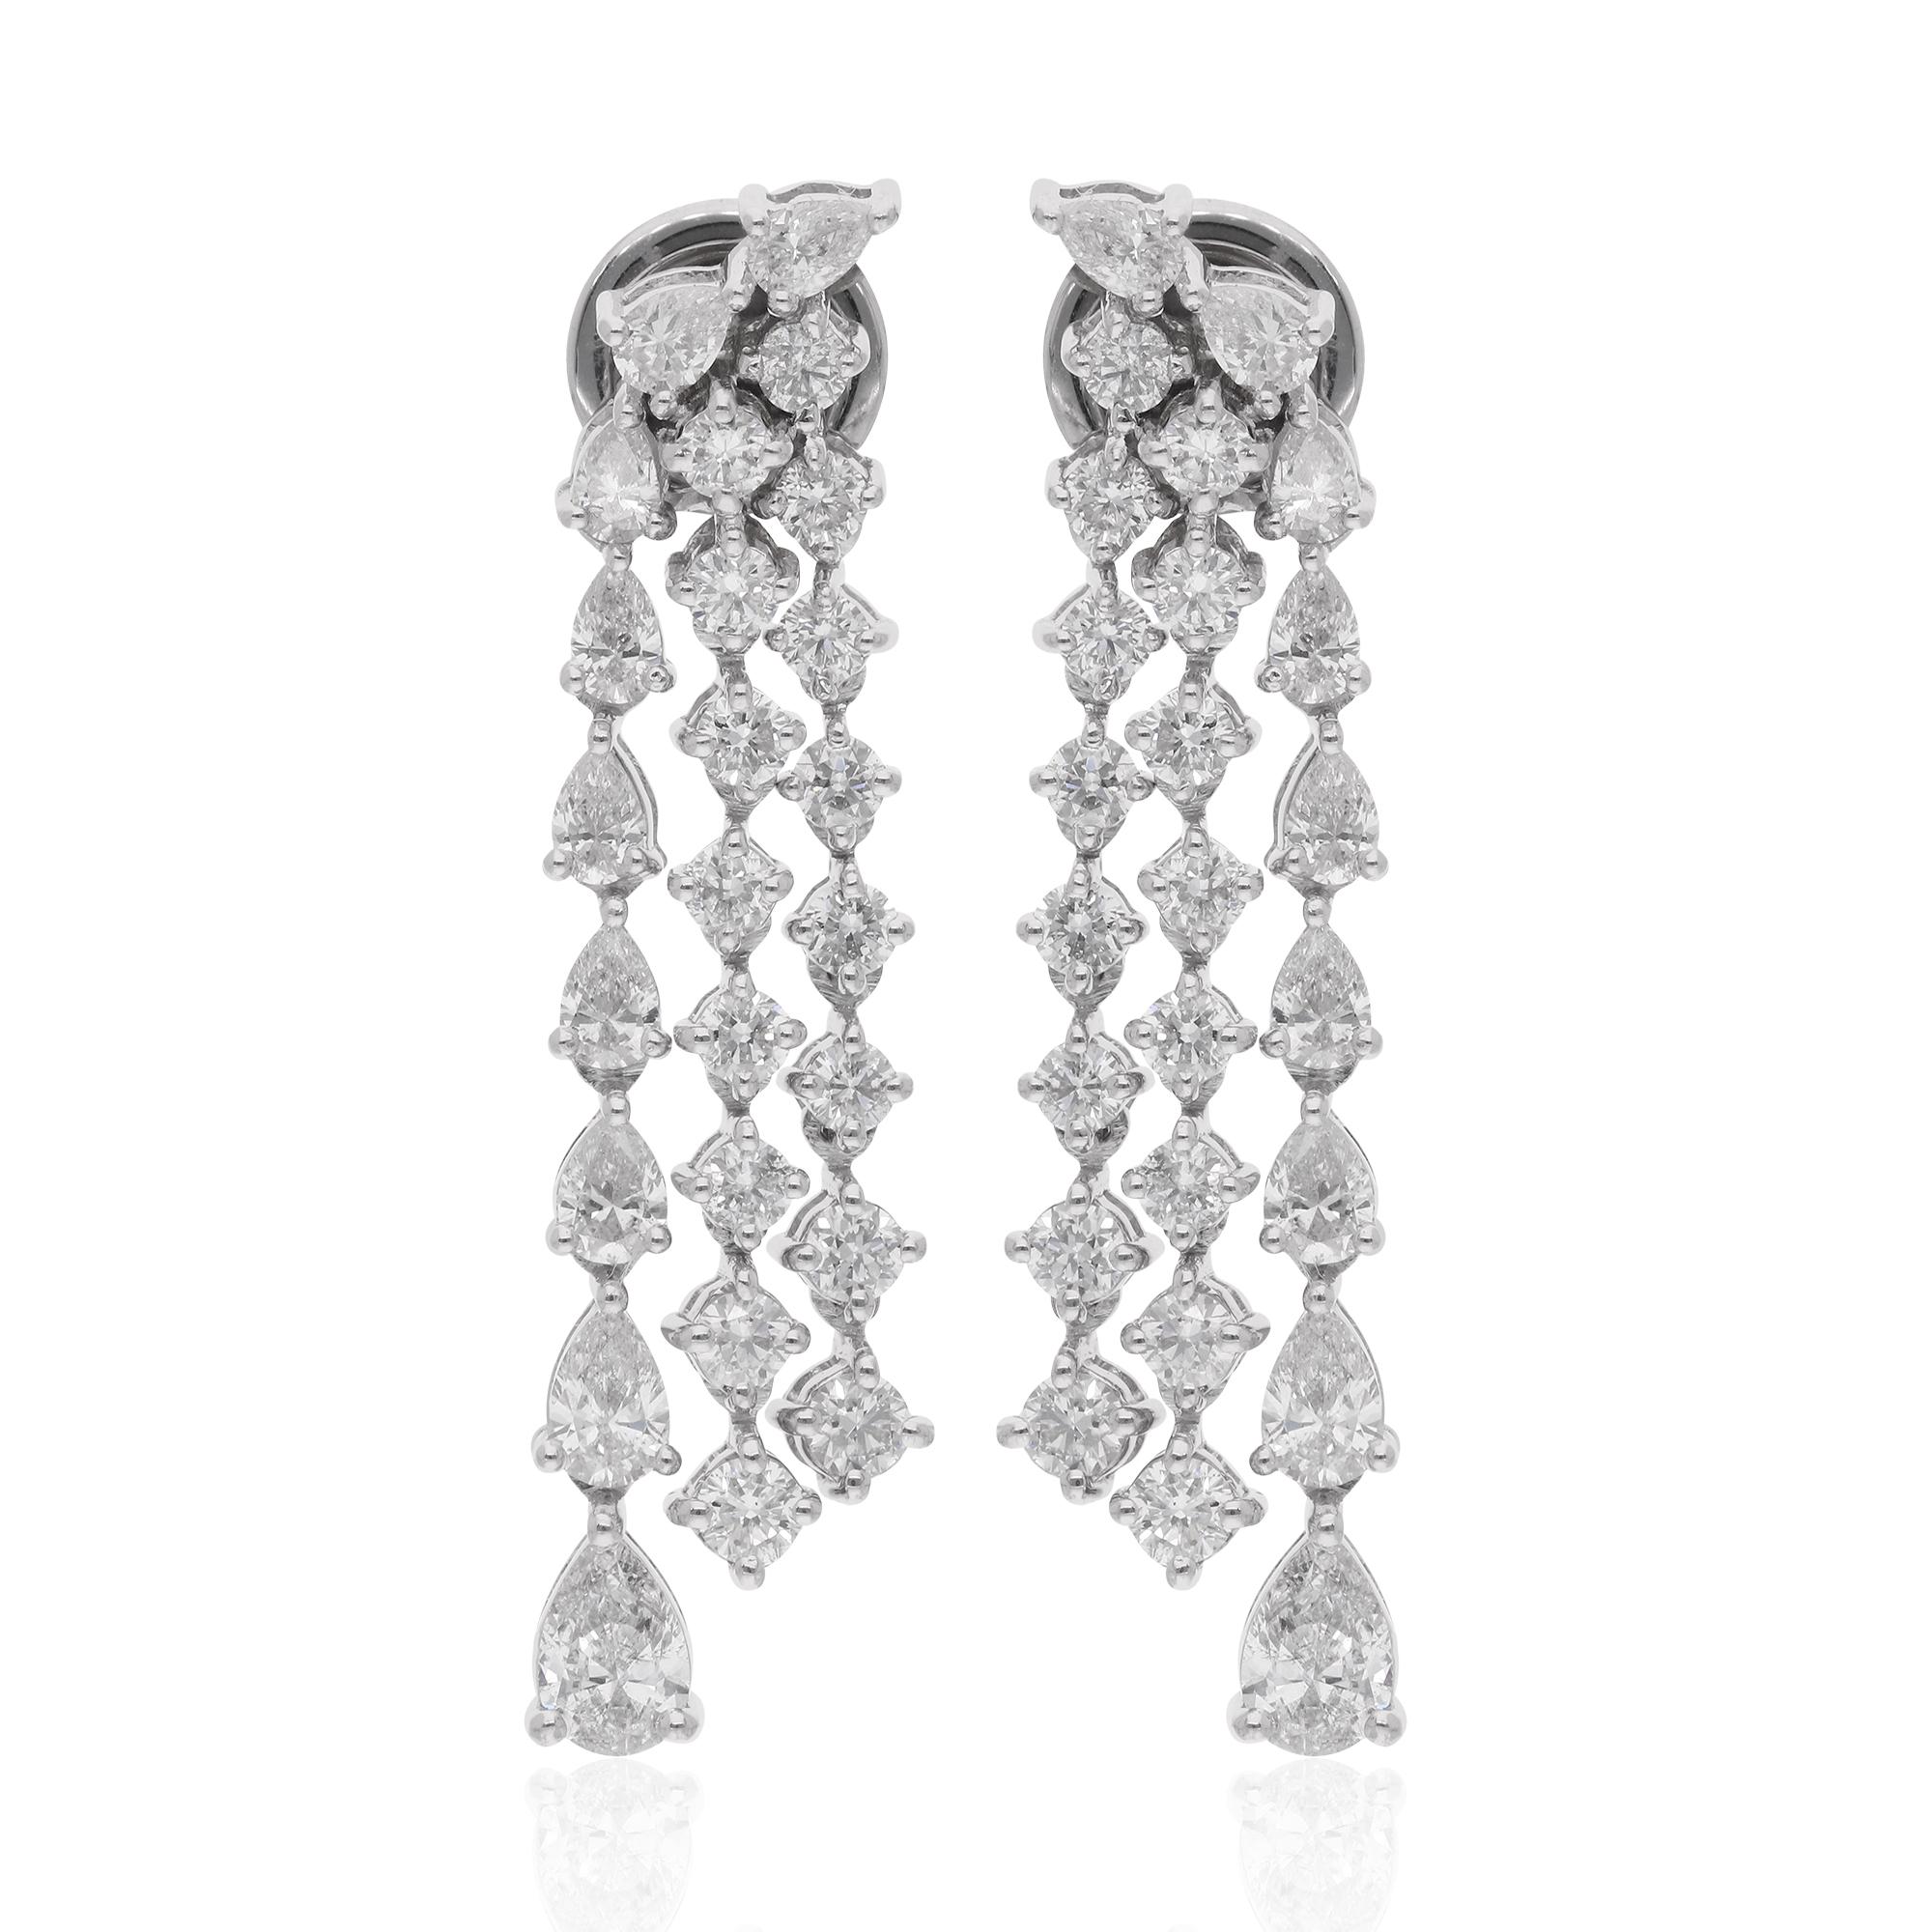 Ces exquises boucles d'oreilles chandelier sont réalisées en or blanc 14 carats et présentent une combinaison captivante de diamants en forme de poire et de diamants ronds d'un poids total de 2,76 carats. Les diamants en forme de poire, connus pour